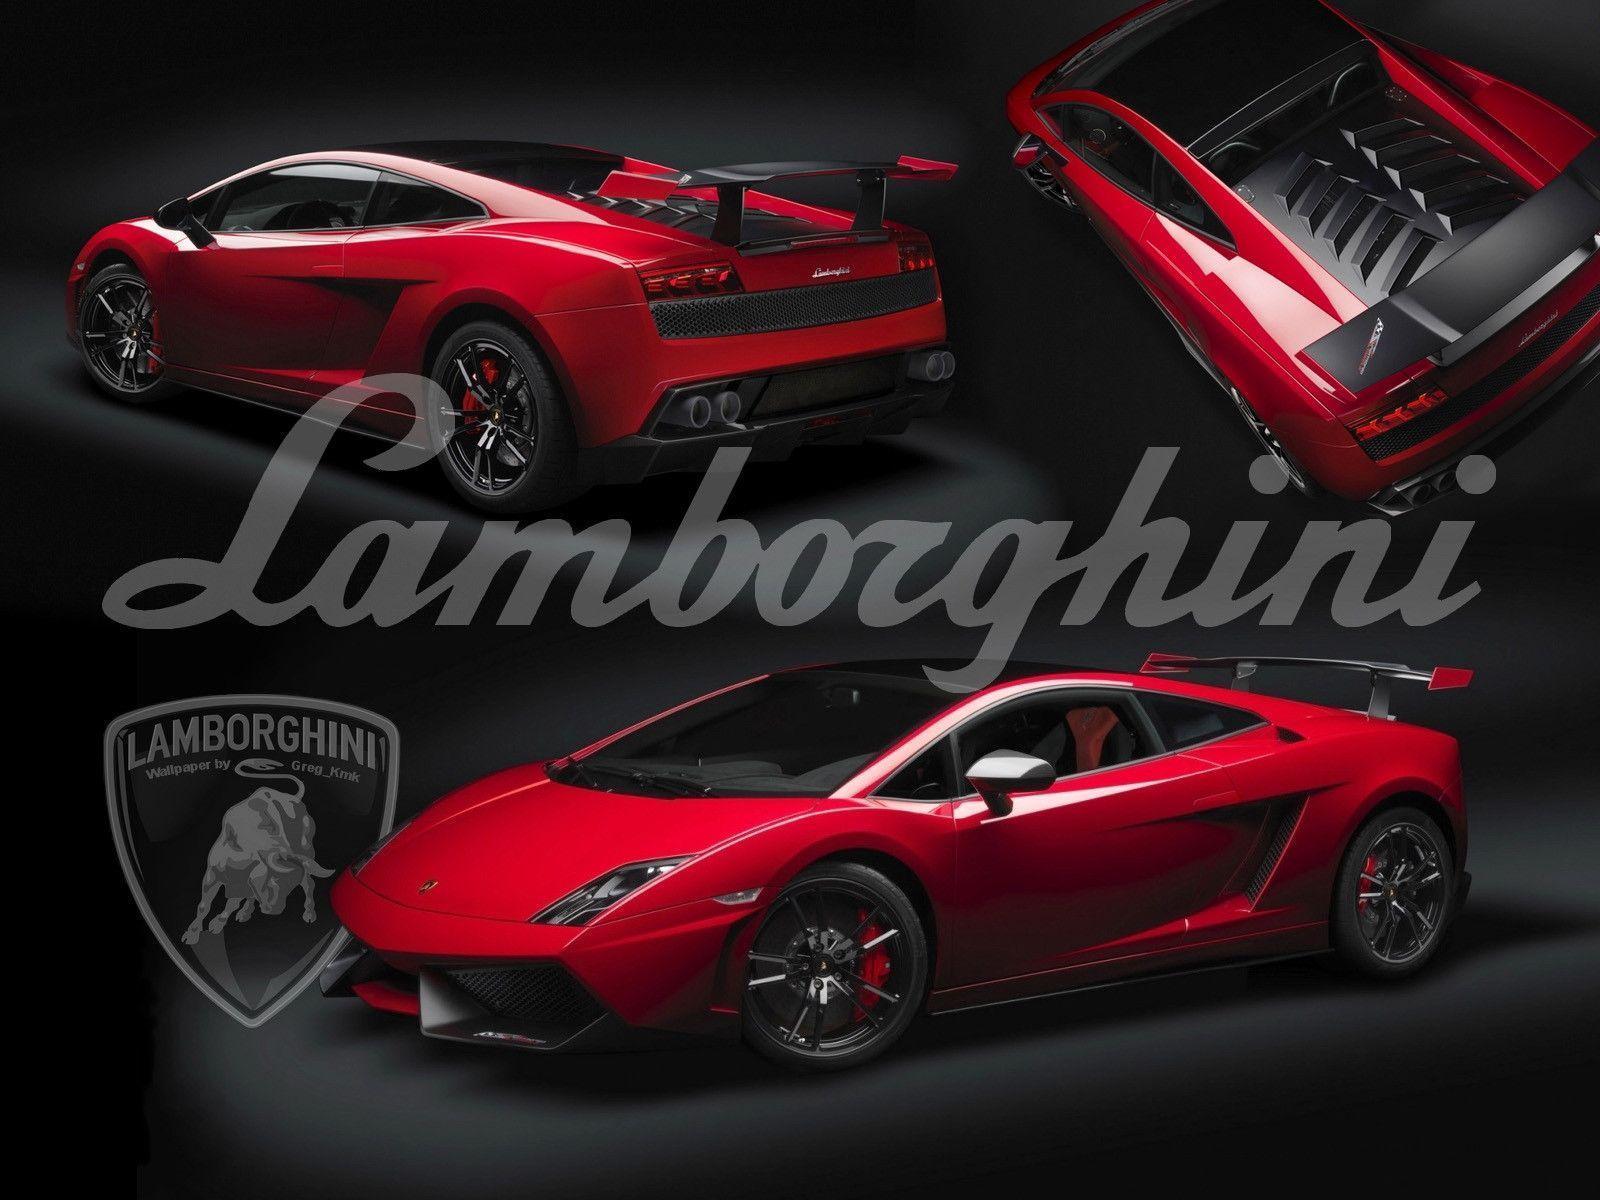 Lamborghini Gallardo Wallpaper 1600x1200